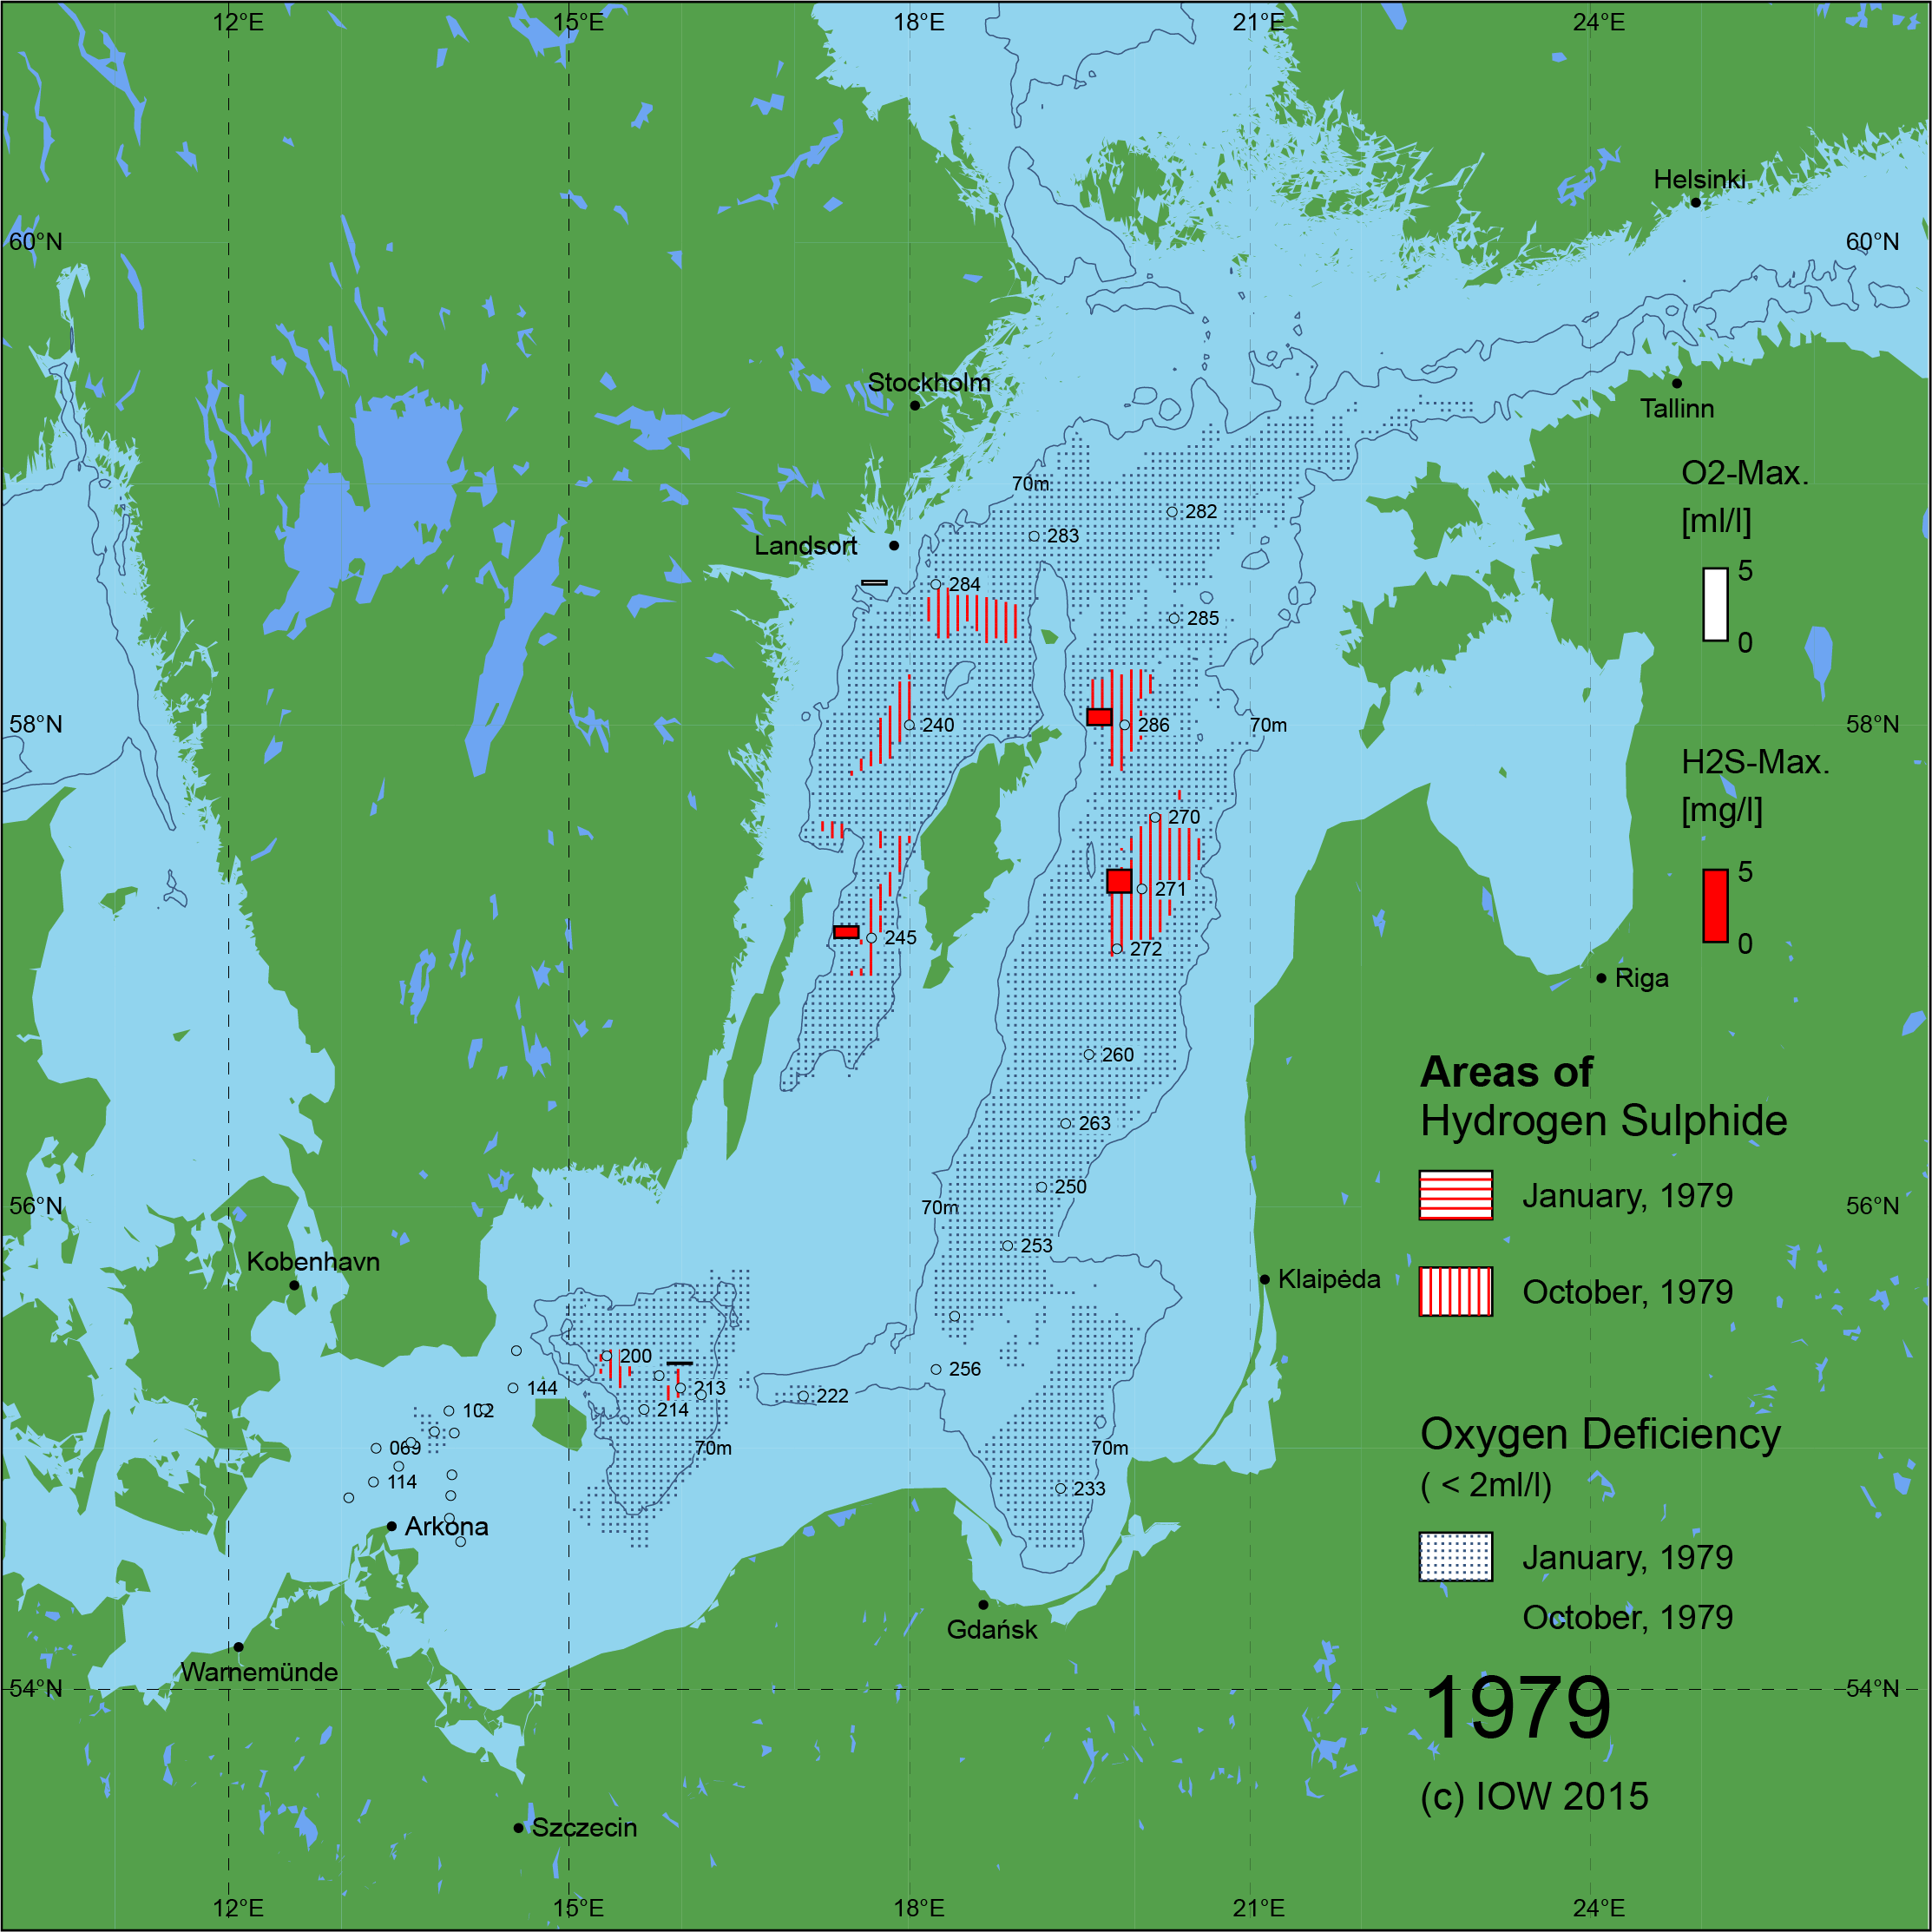 Sauerstoffarme und sauerstofffreie Gebiete in der Ostsee - 1979